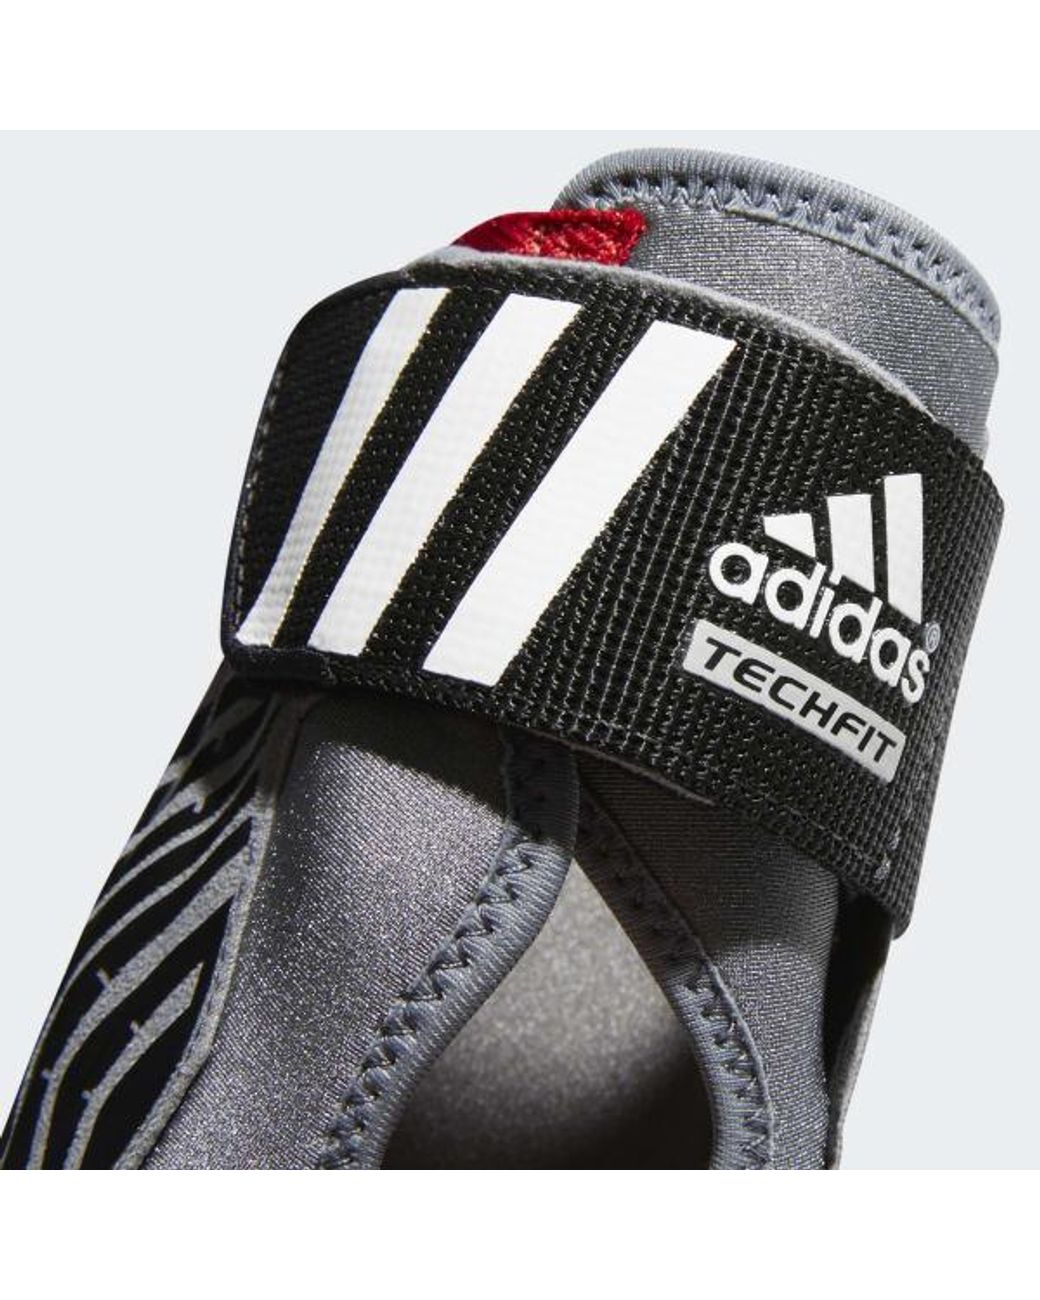 adidas Adizero Speedwrap Ankle Brace in 